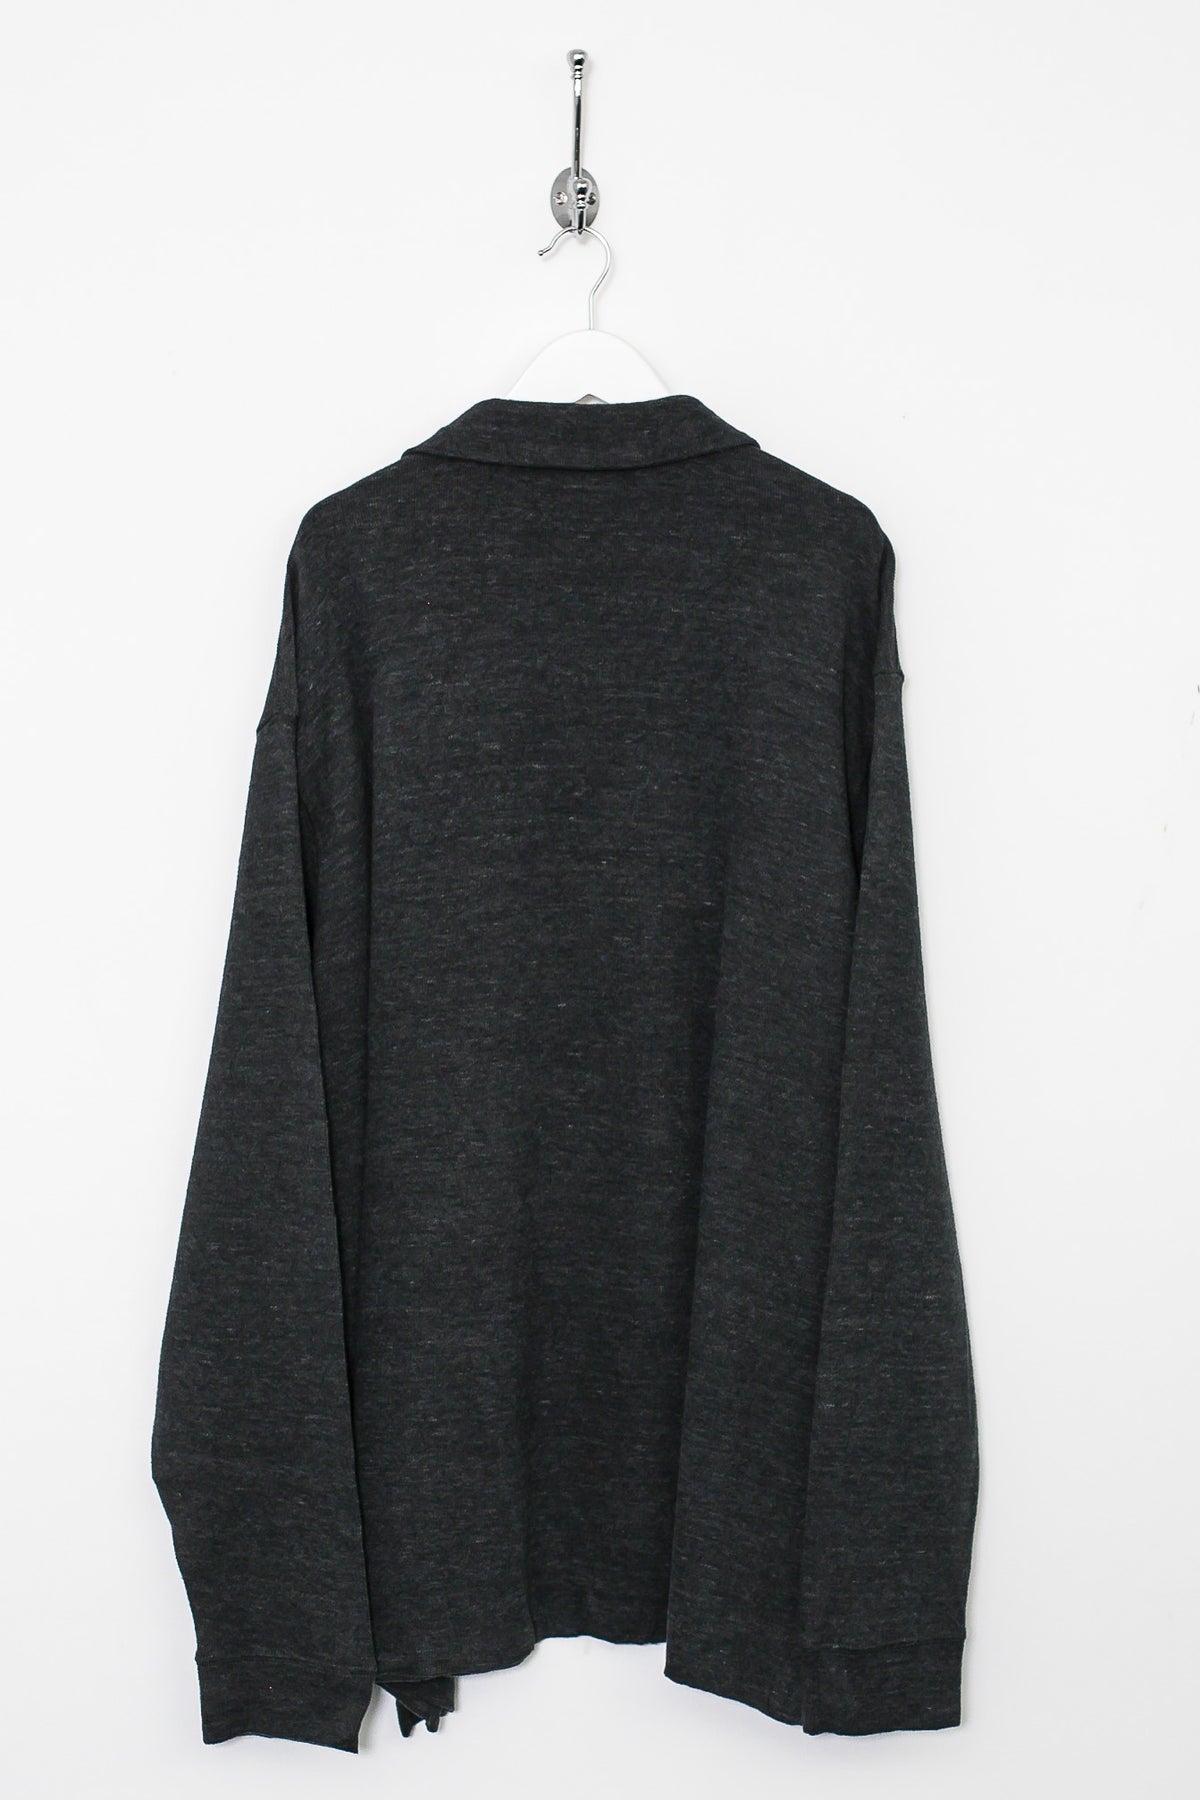 Ralph Lauren 1/4 Zip Sweatshirt (XXL)